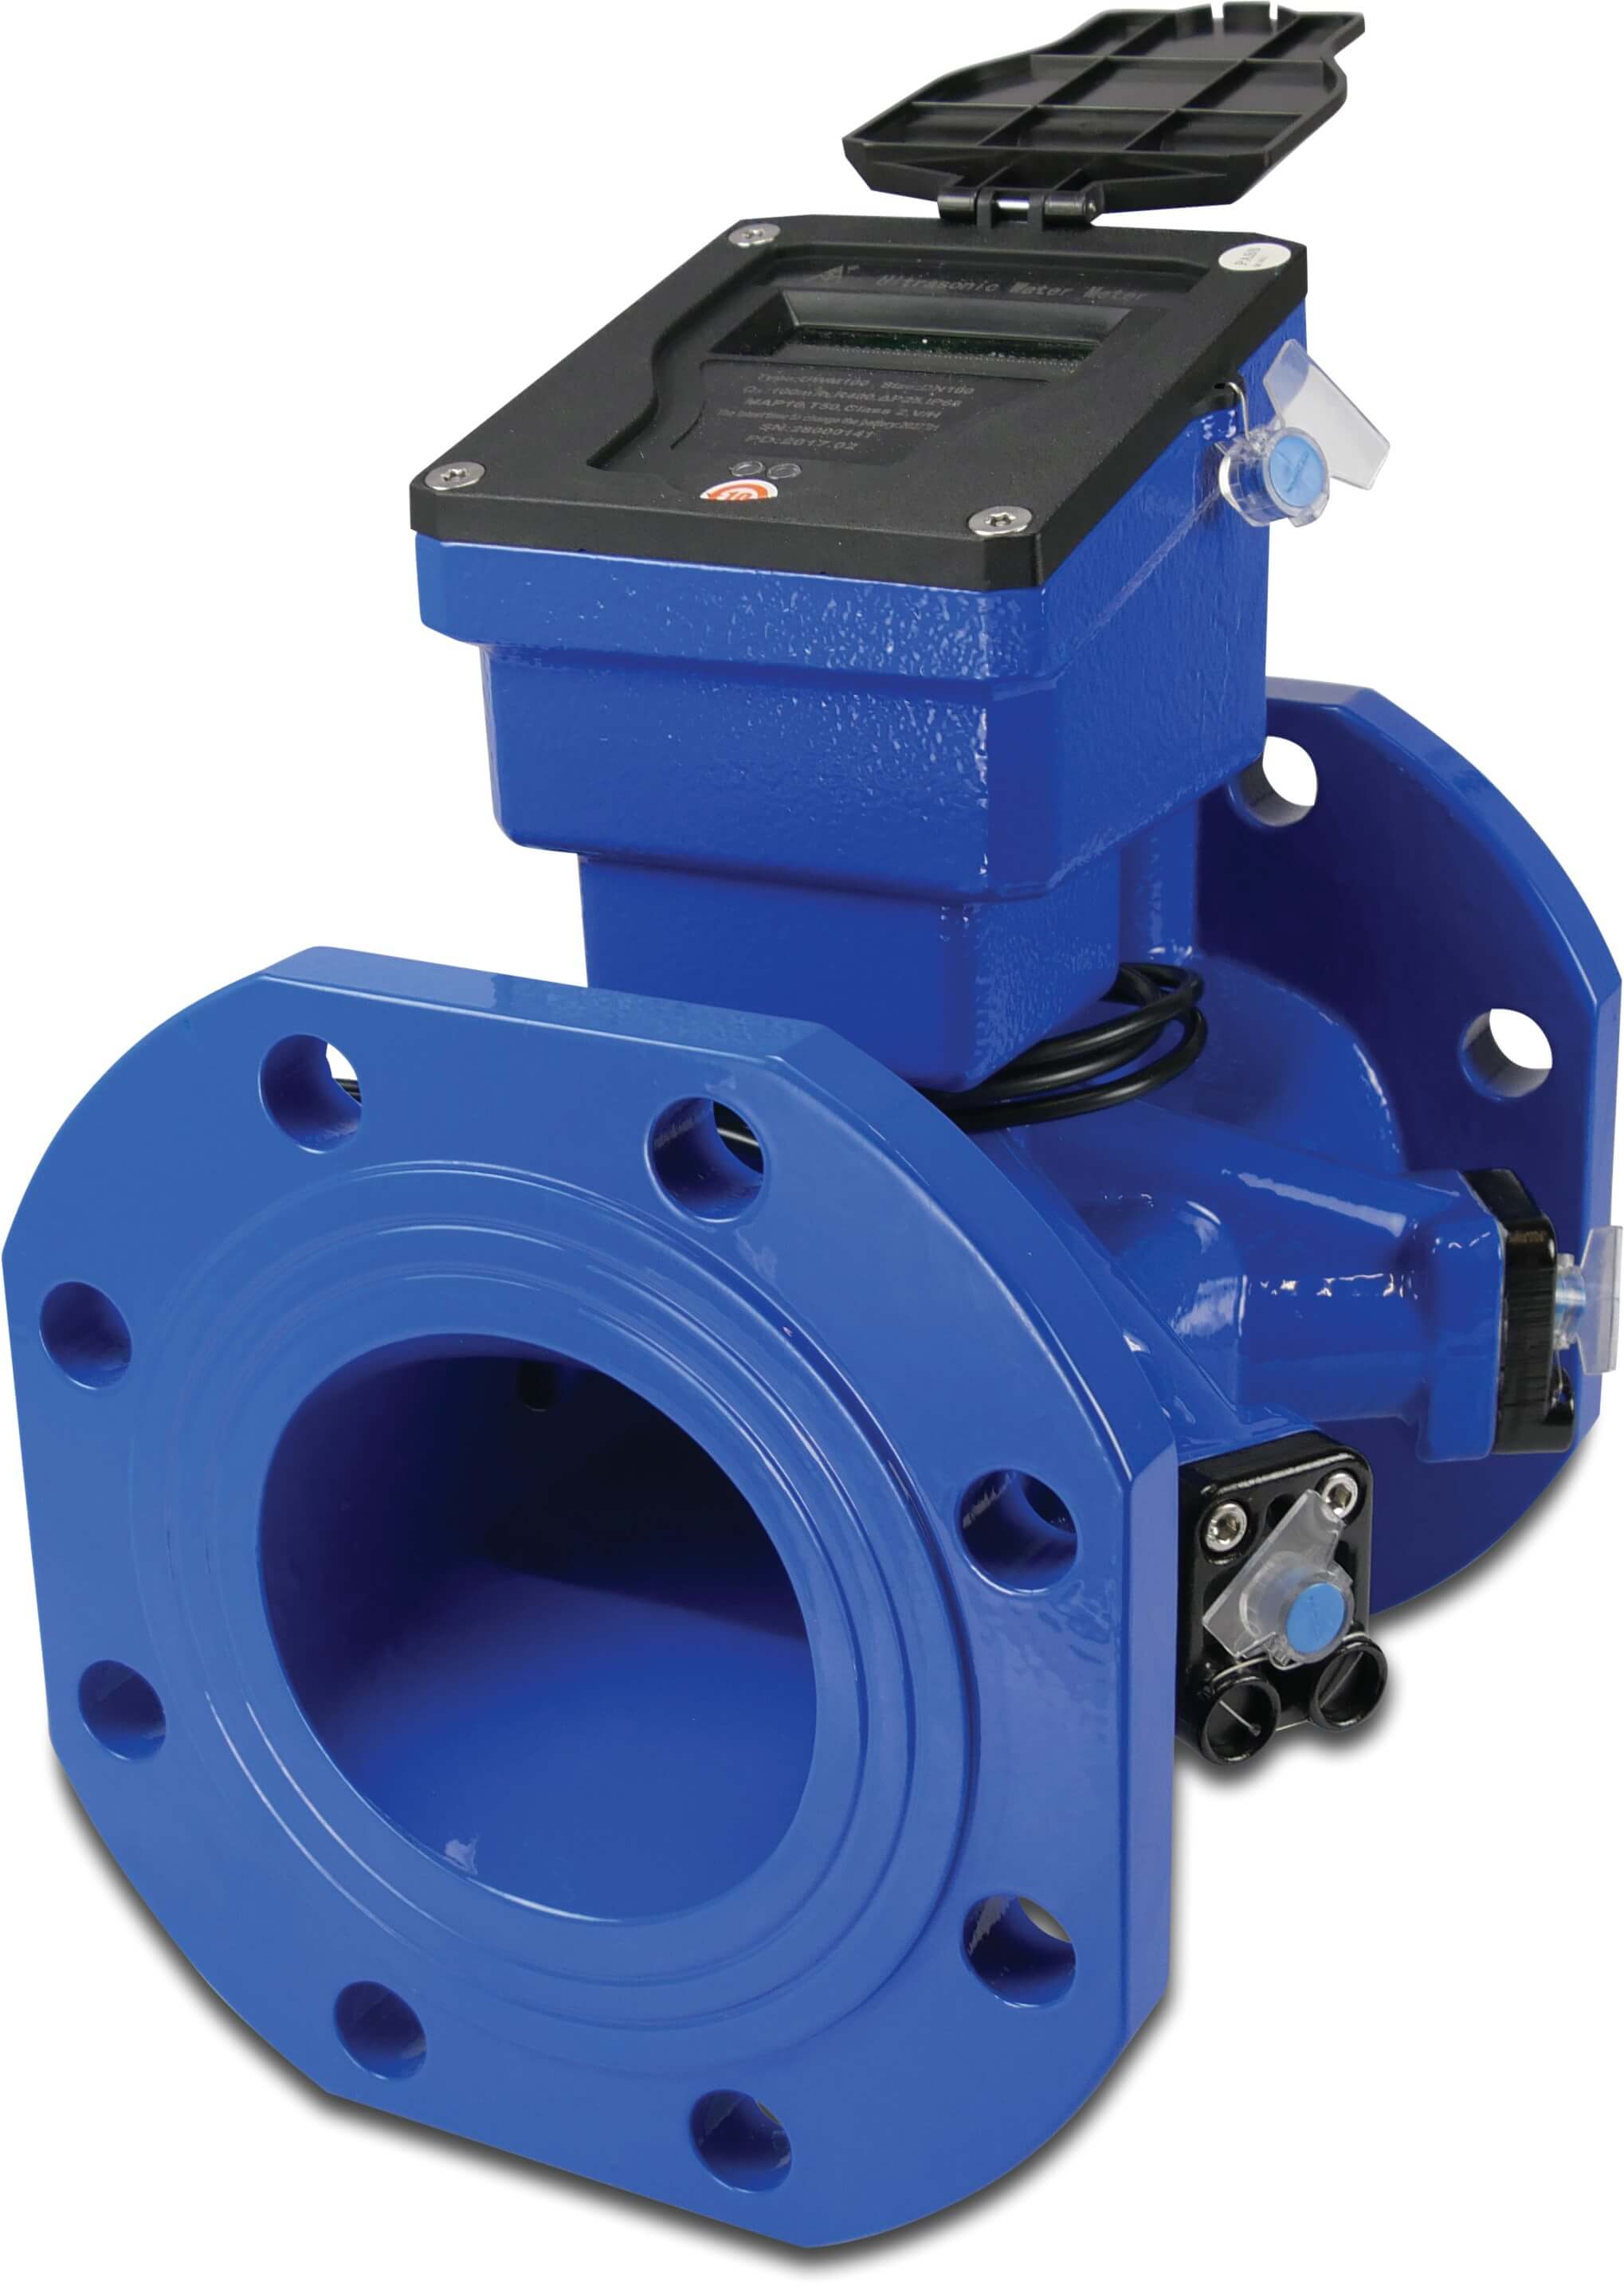 Profec Water meter cast iron DN65 DIN flange 16bar 40m³/h blue type Class 2